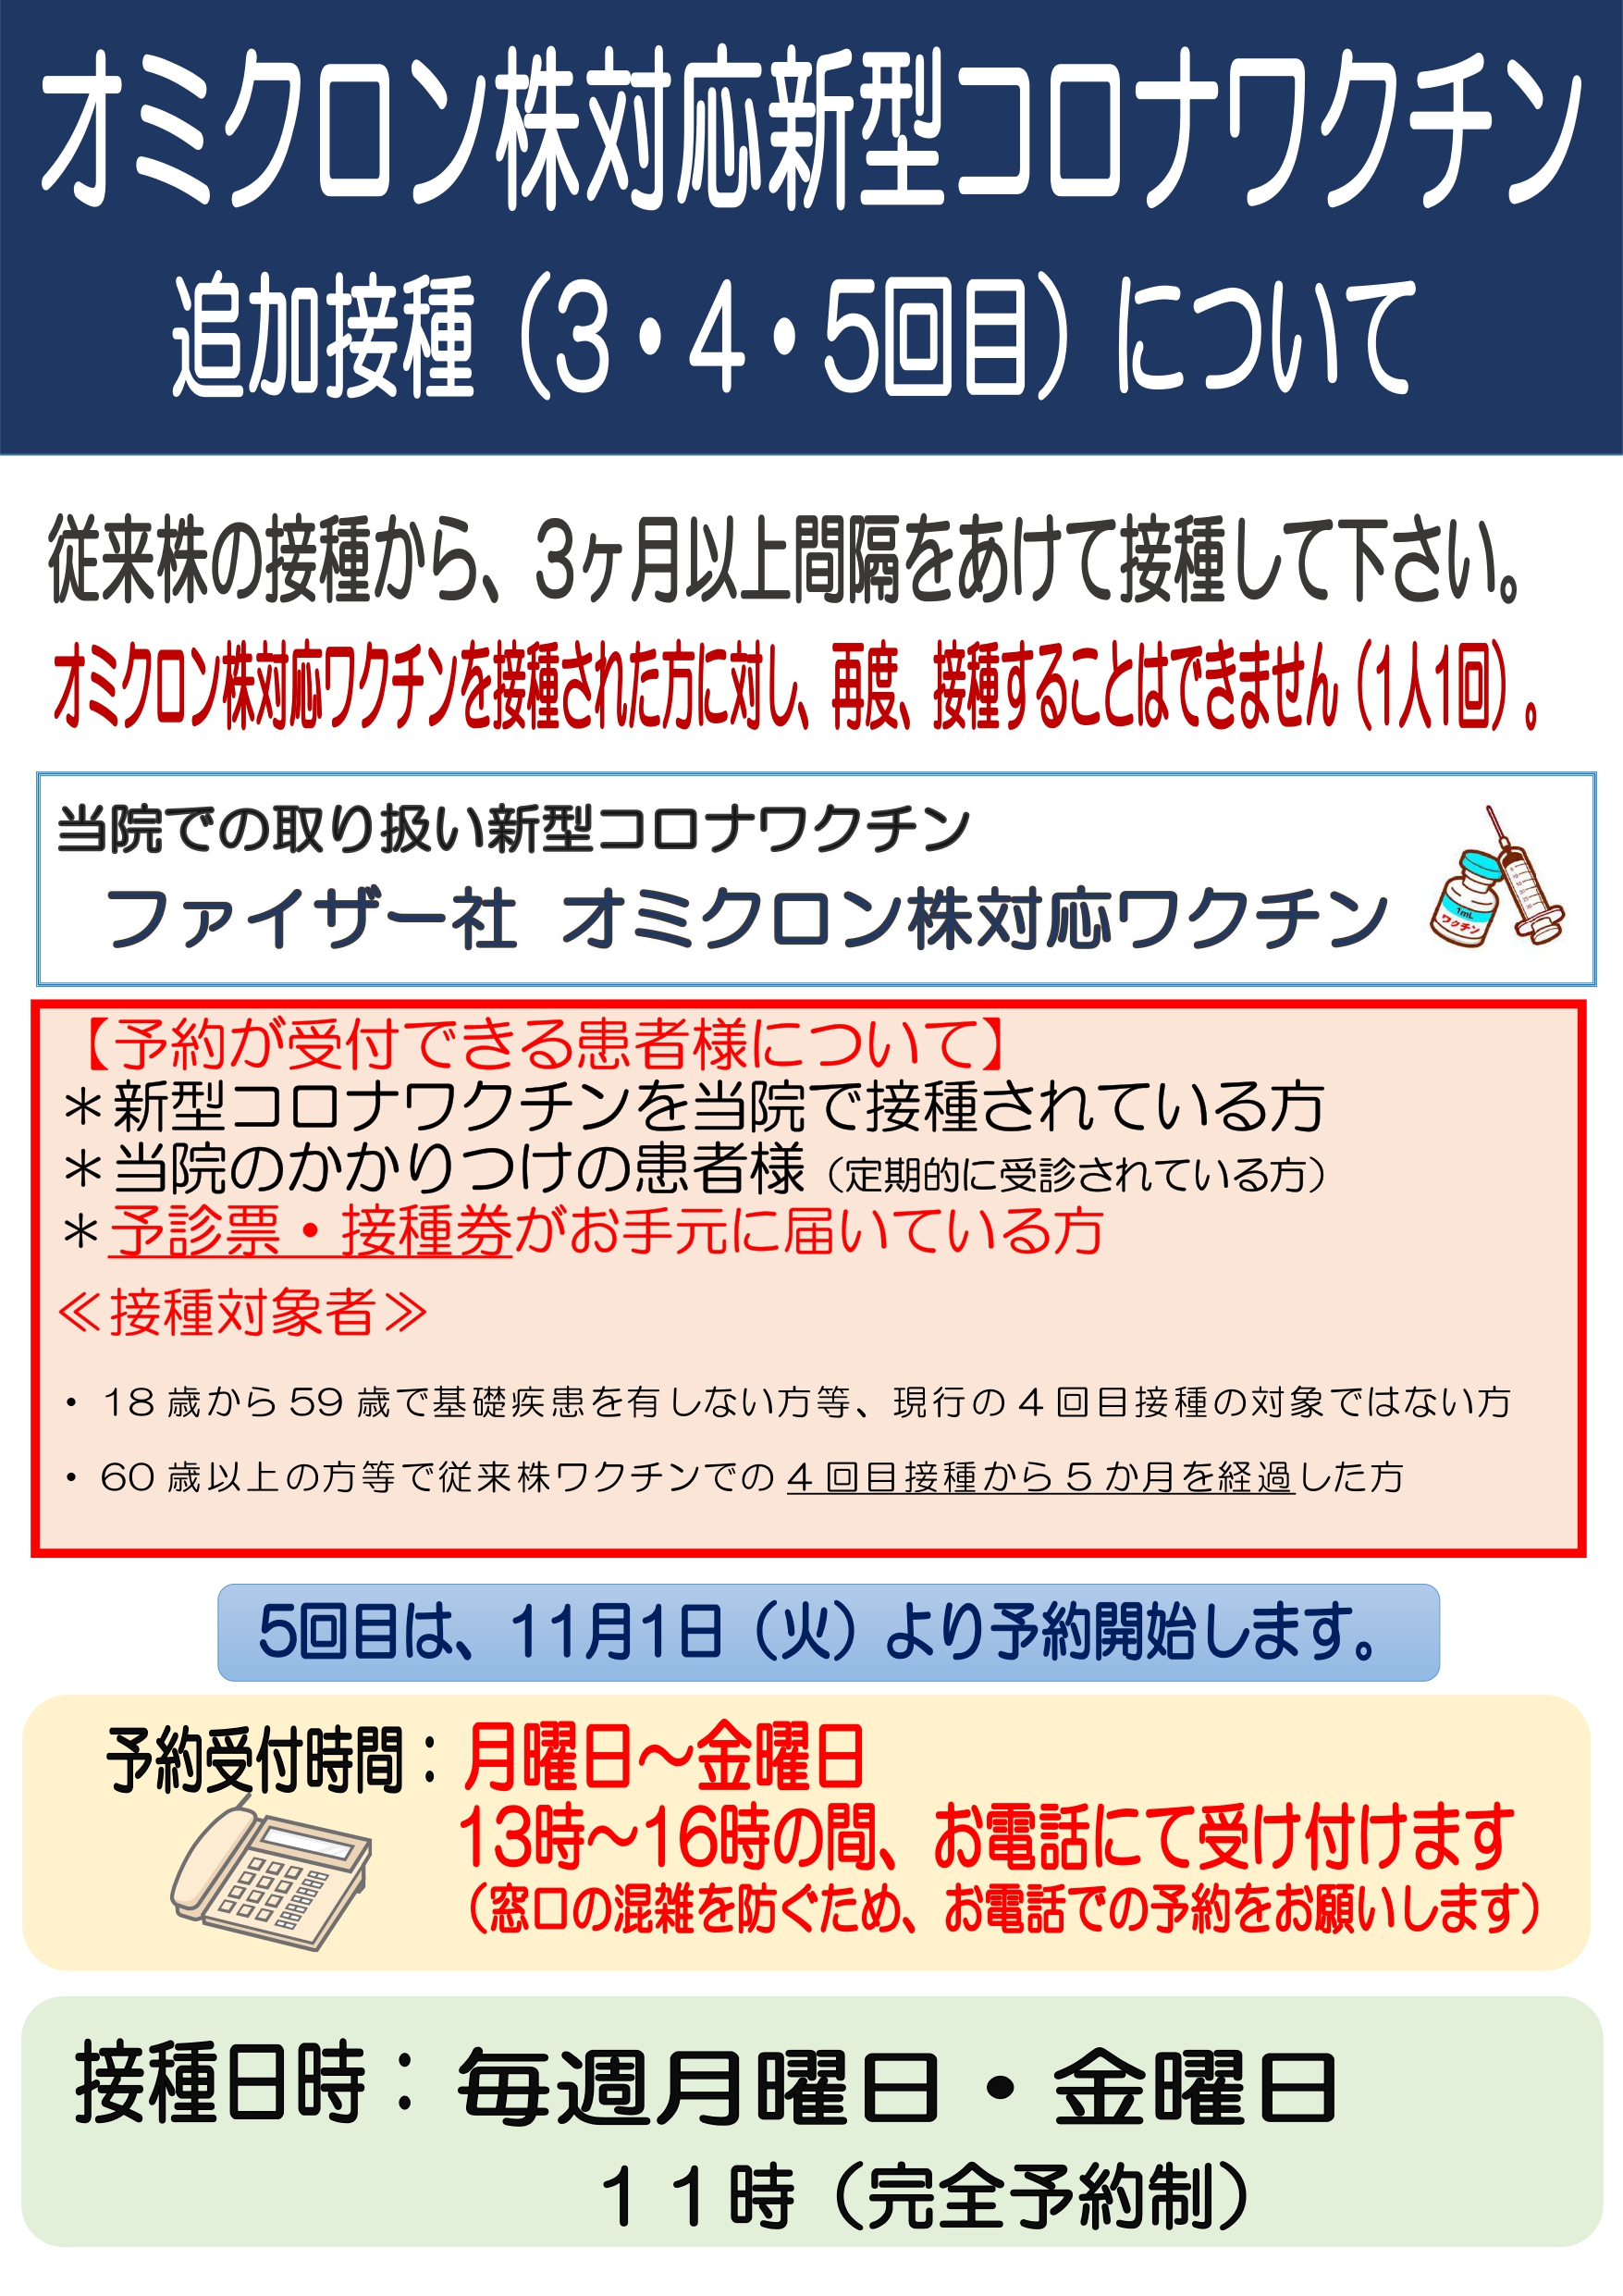 オミクロン株対応ワクチンポスター_page-0001 (2).jpg